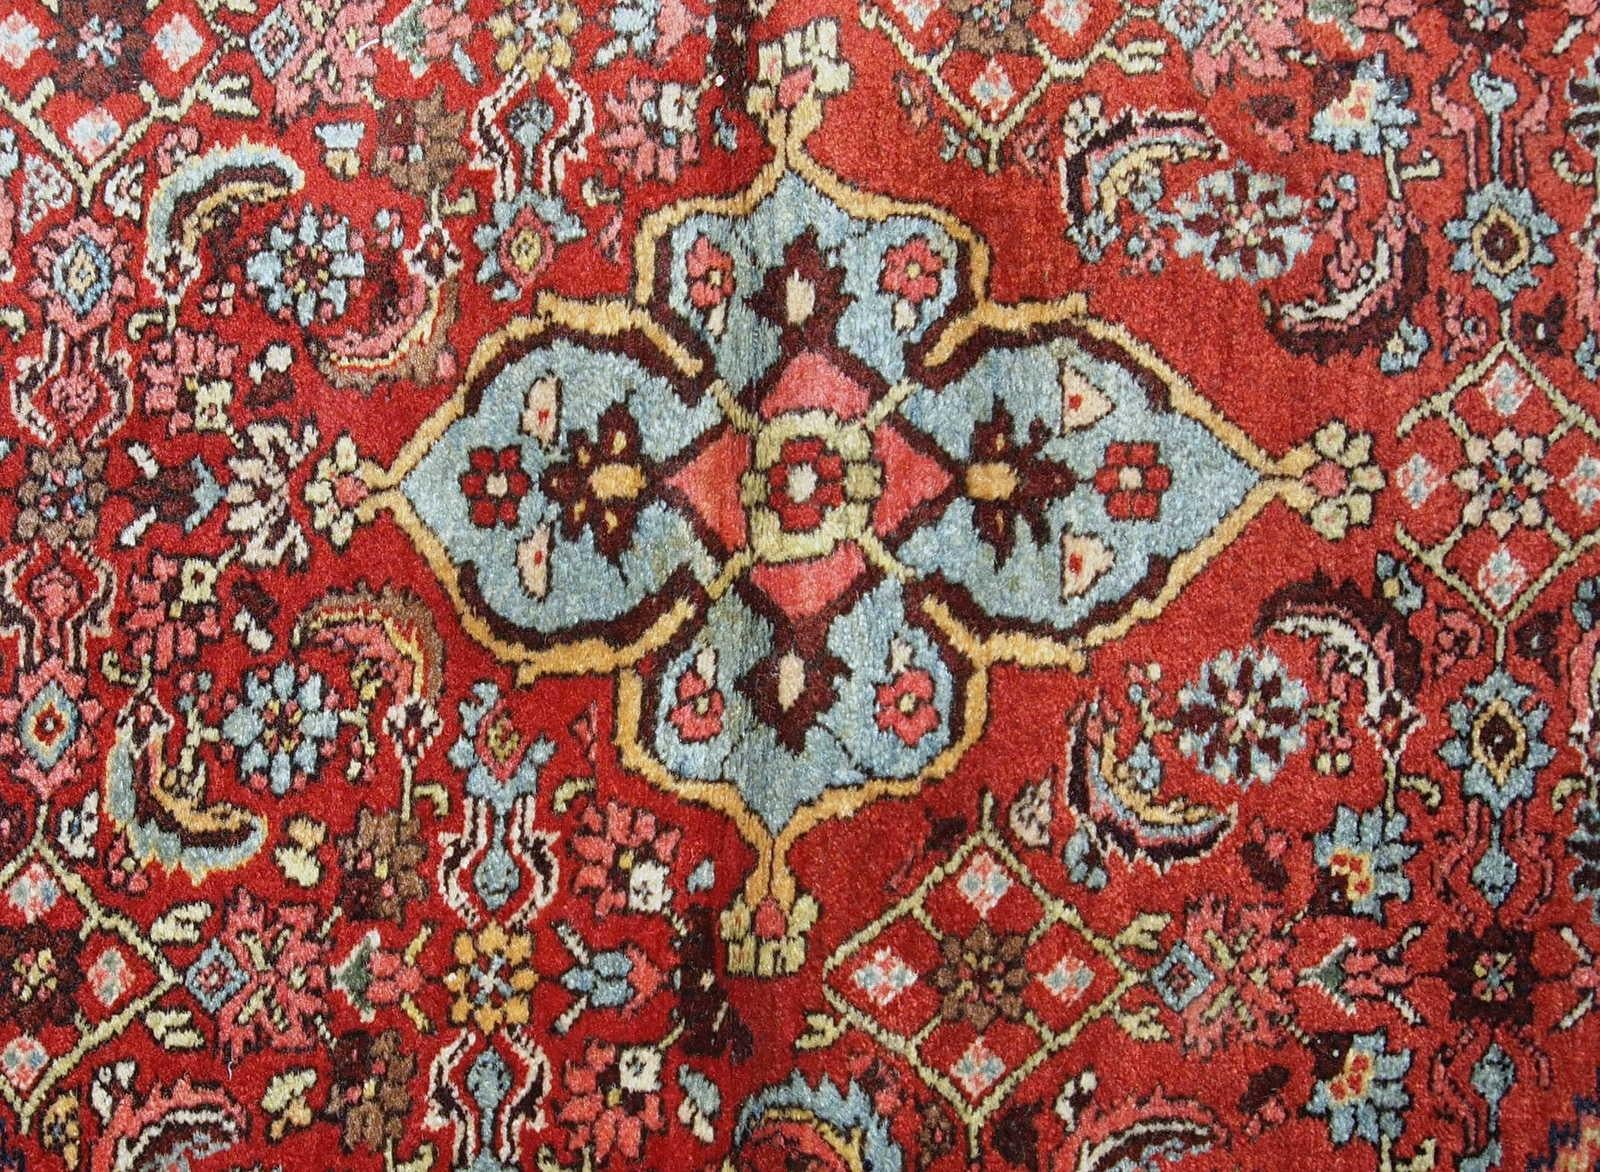 Tapis Bidjar ancien, fait à la main, datant du début du 20e siècle. Le tapis est en bon état d'origine, en laine rouge et bleue.

?-condition : original bon,

-circa : 1900s,

-taille : 4,5' x 5,6' (137cm x 170cm),

-matériau :